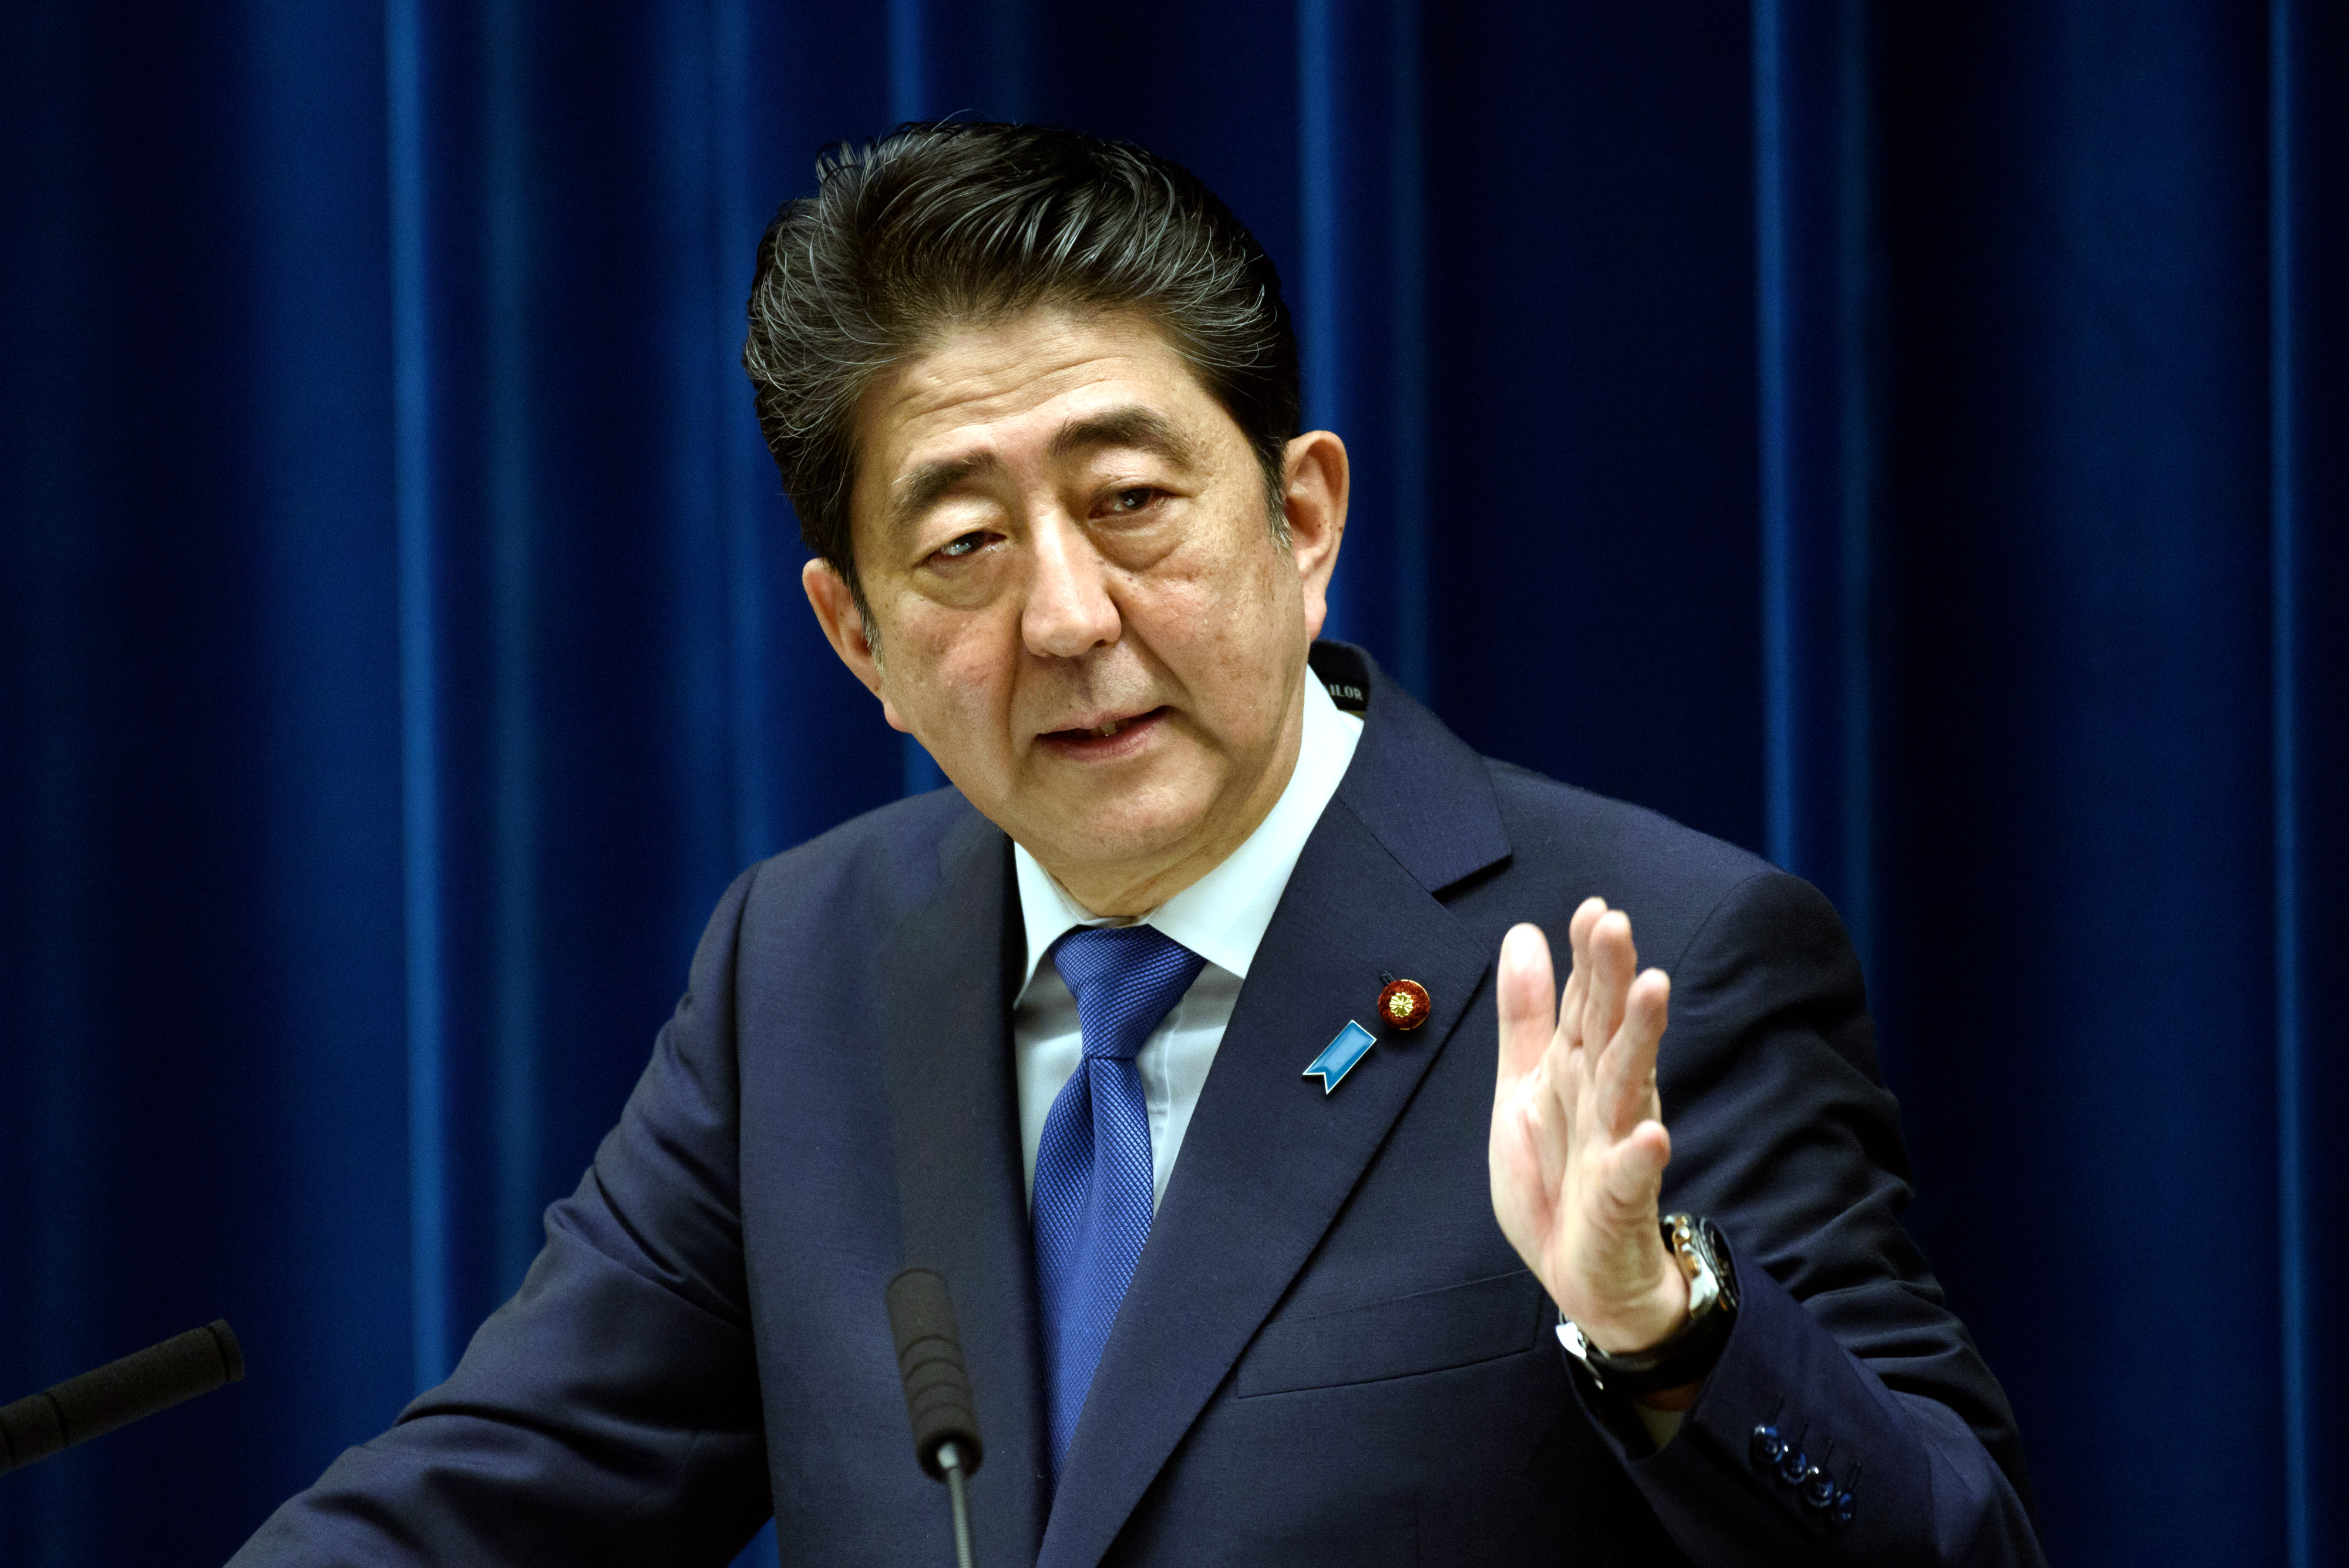 9月25日,日本首相安倍晋三在东京首相官邸举行的记者会上回答记者提问